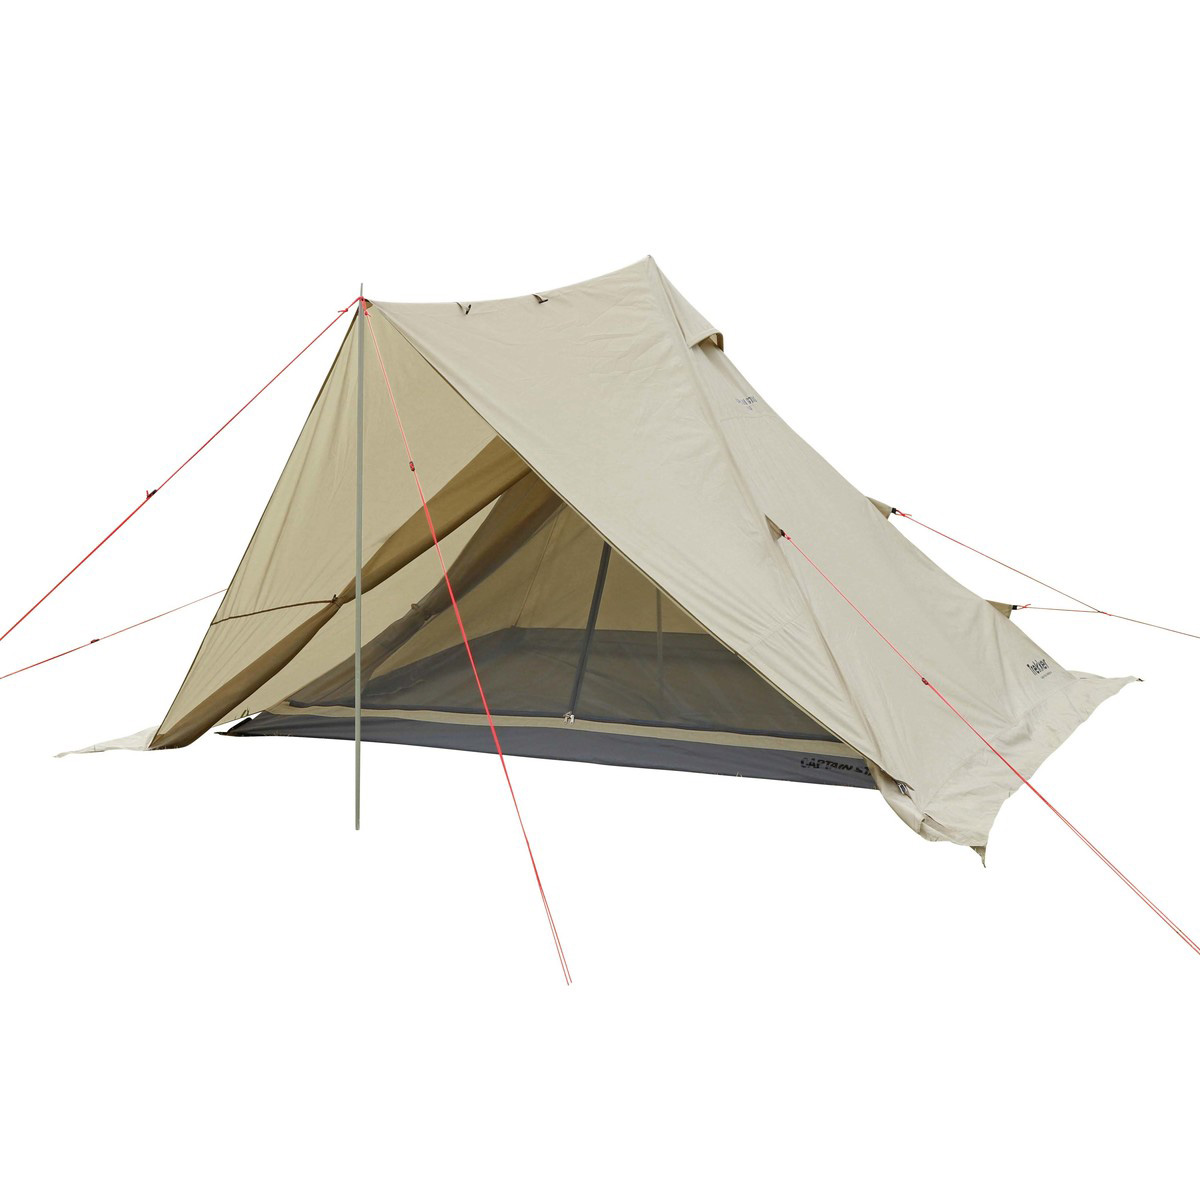 大きさ・使用人数別にテントを選ぶ | テントの種類と選び方